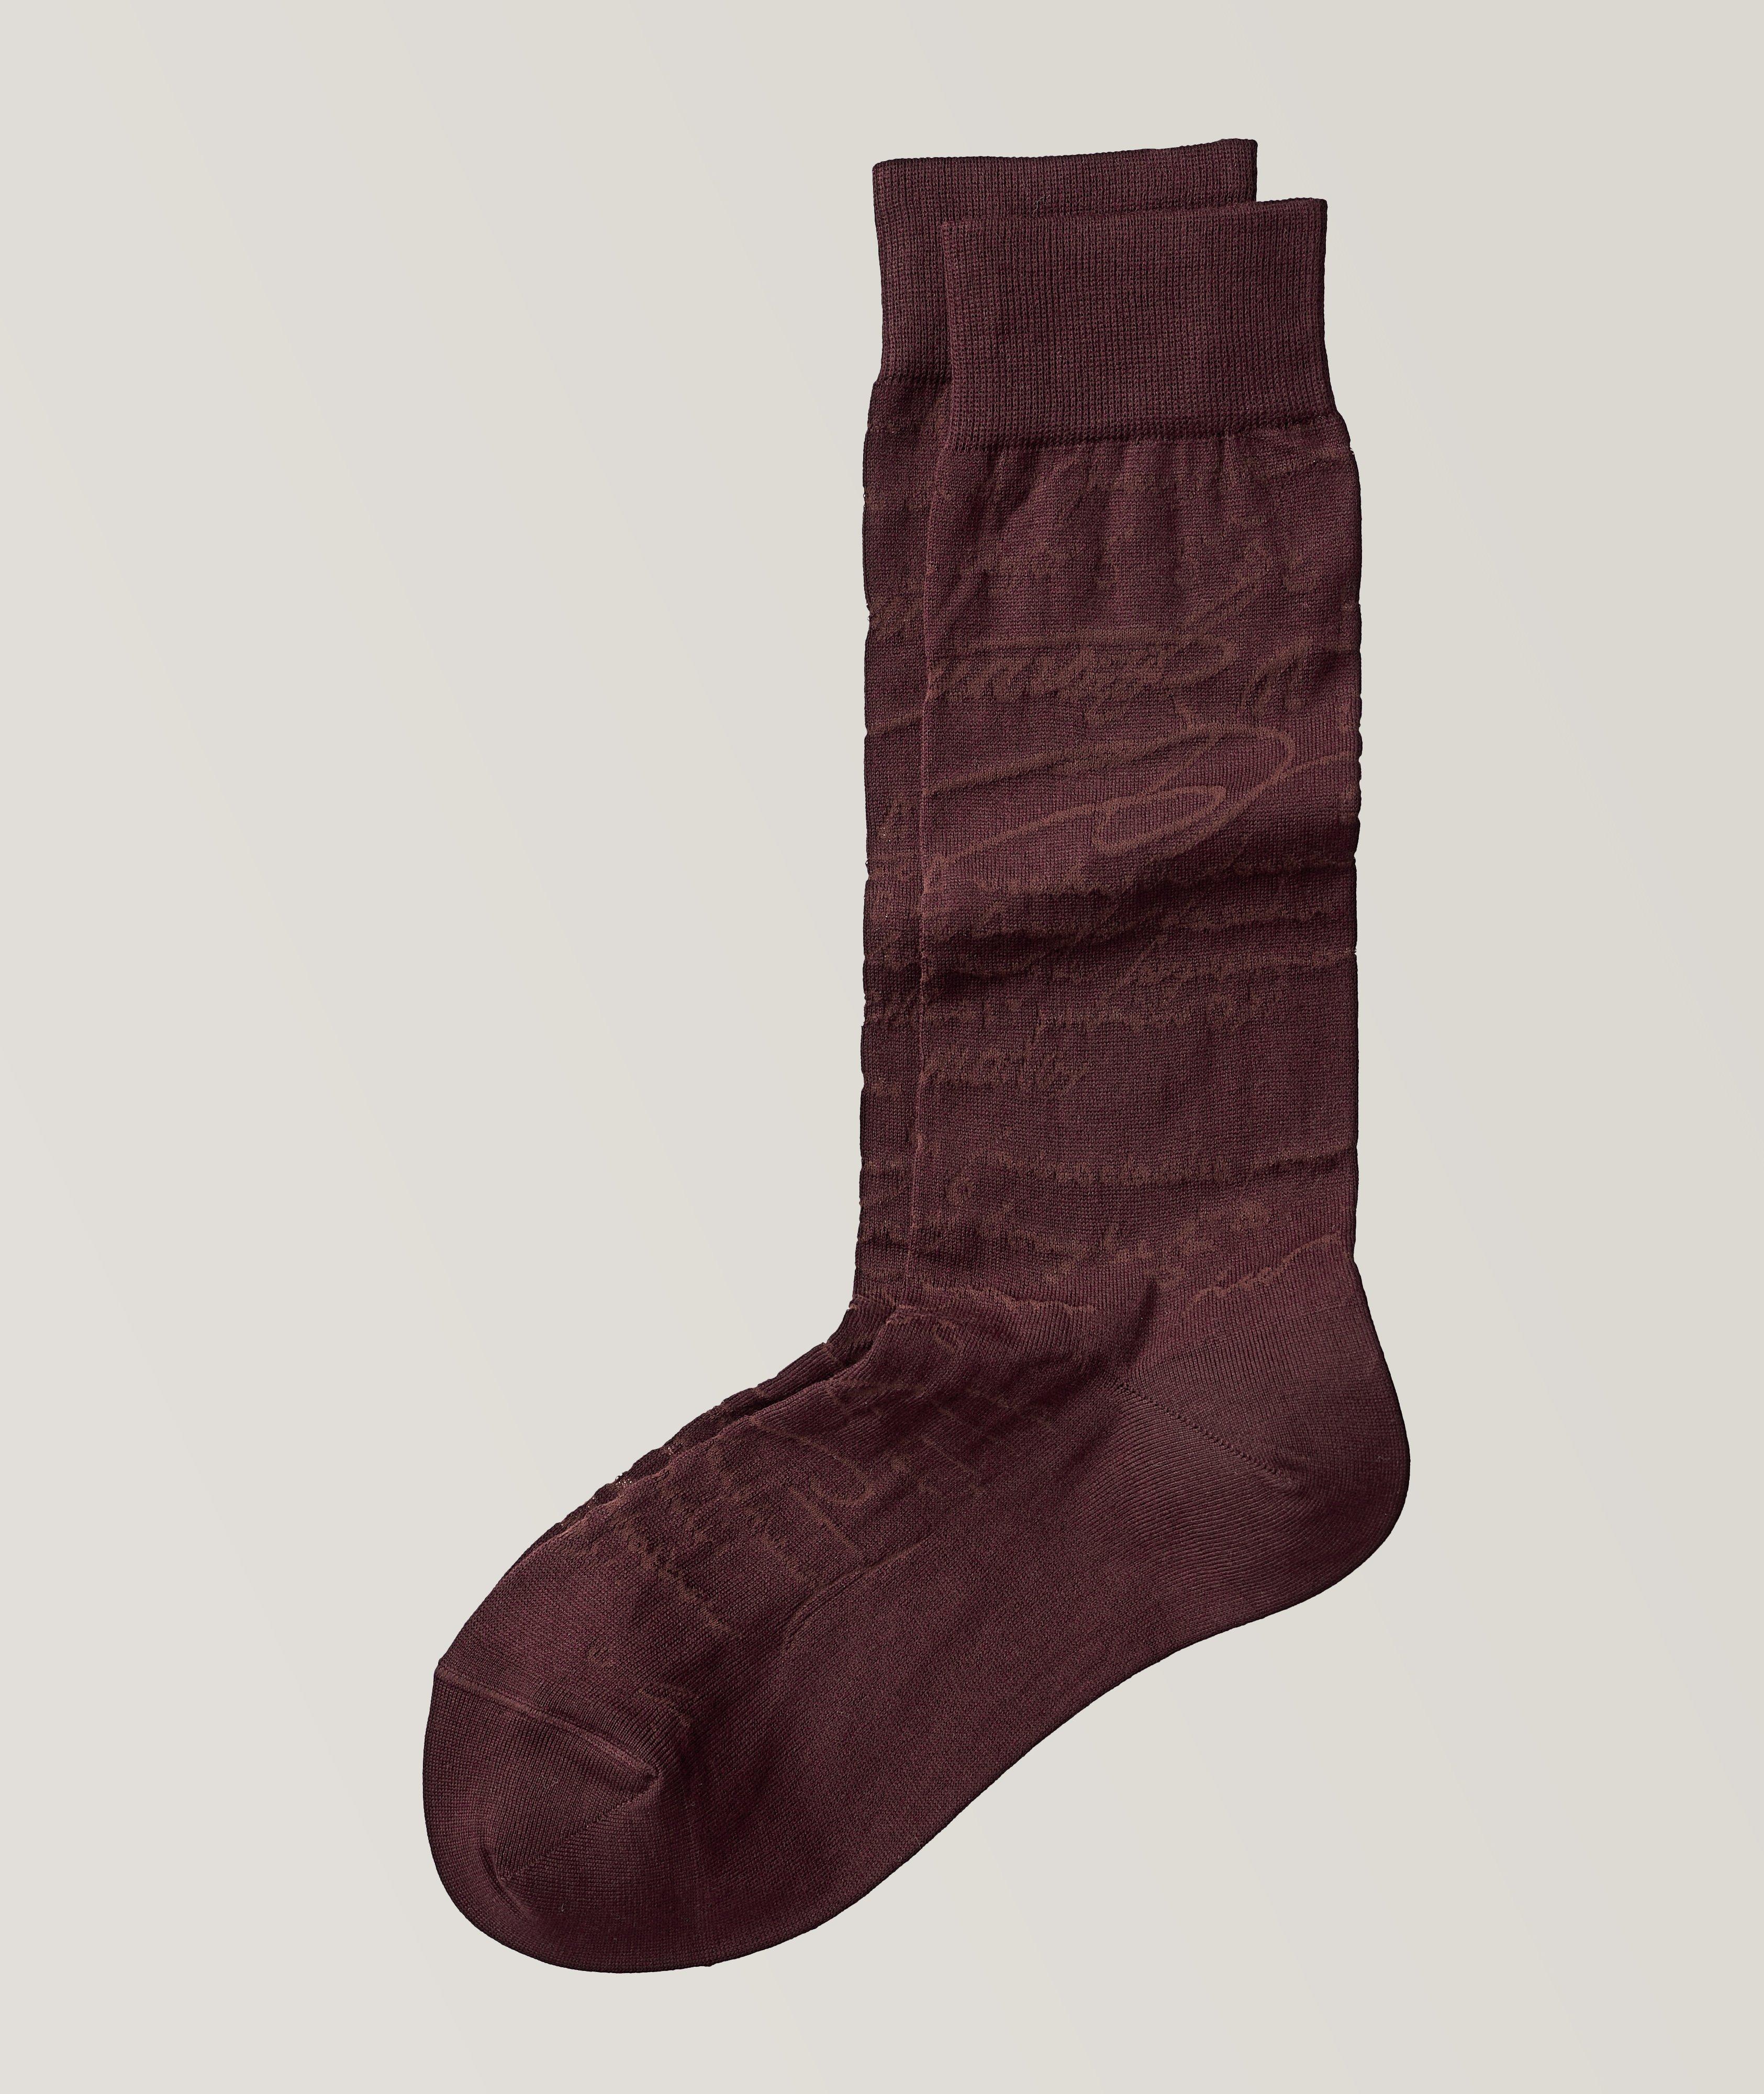 Cotton Blend Scritto Socks image 0